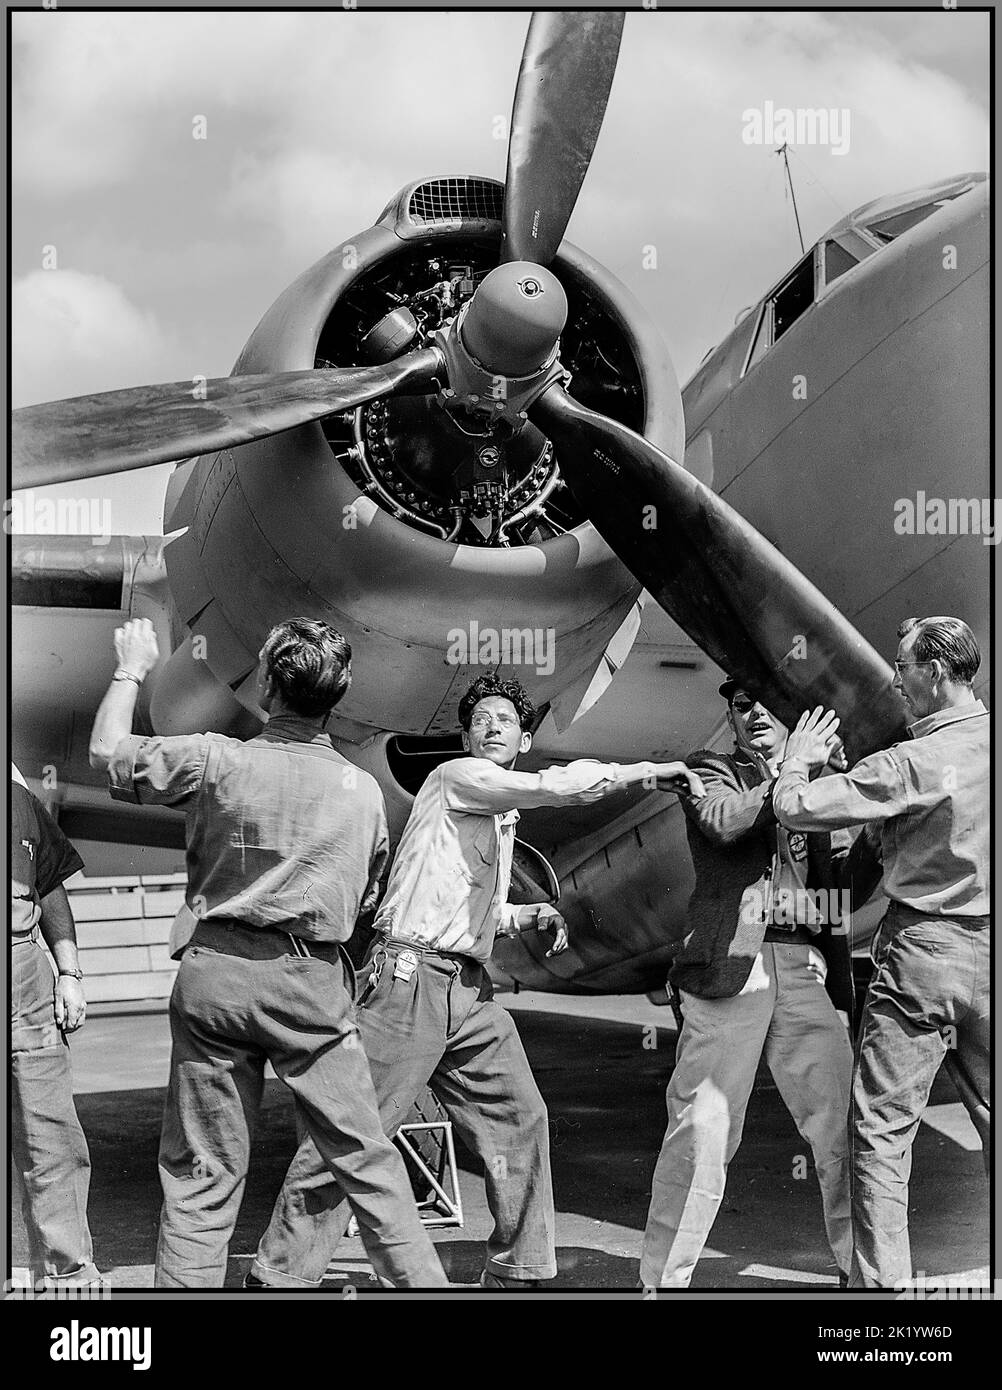 WW2 1943 amerikanische Aircraftr-Produktion USA Überprüfung abgeschlossen Lockheed Ventura PV-1 zweimotoriger Mittelbomber im Vega-Flugzeugwerk, Burbank, Kalifornien. Arbeiter drehen Propeller. Amerika USA Zweiten Weltkrieg Zweiten Weltkrieg Stockfoto